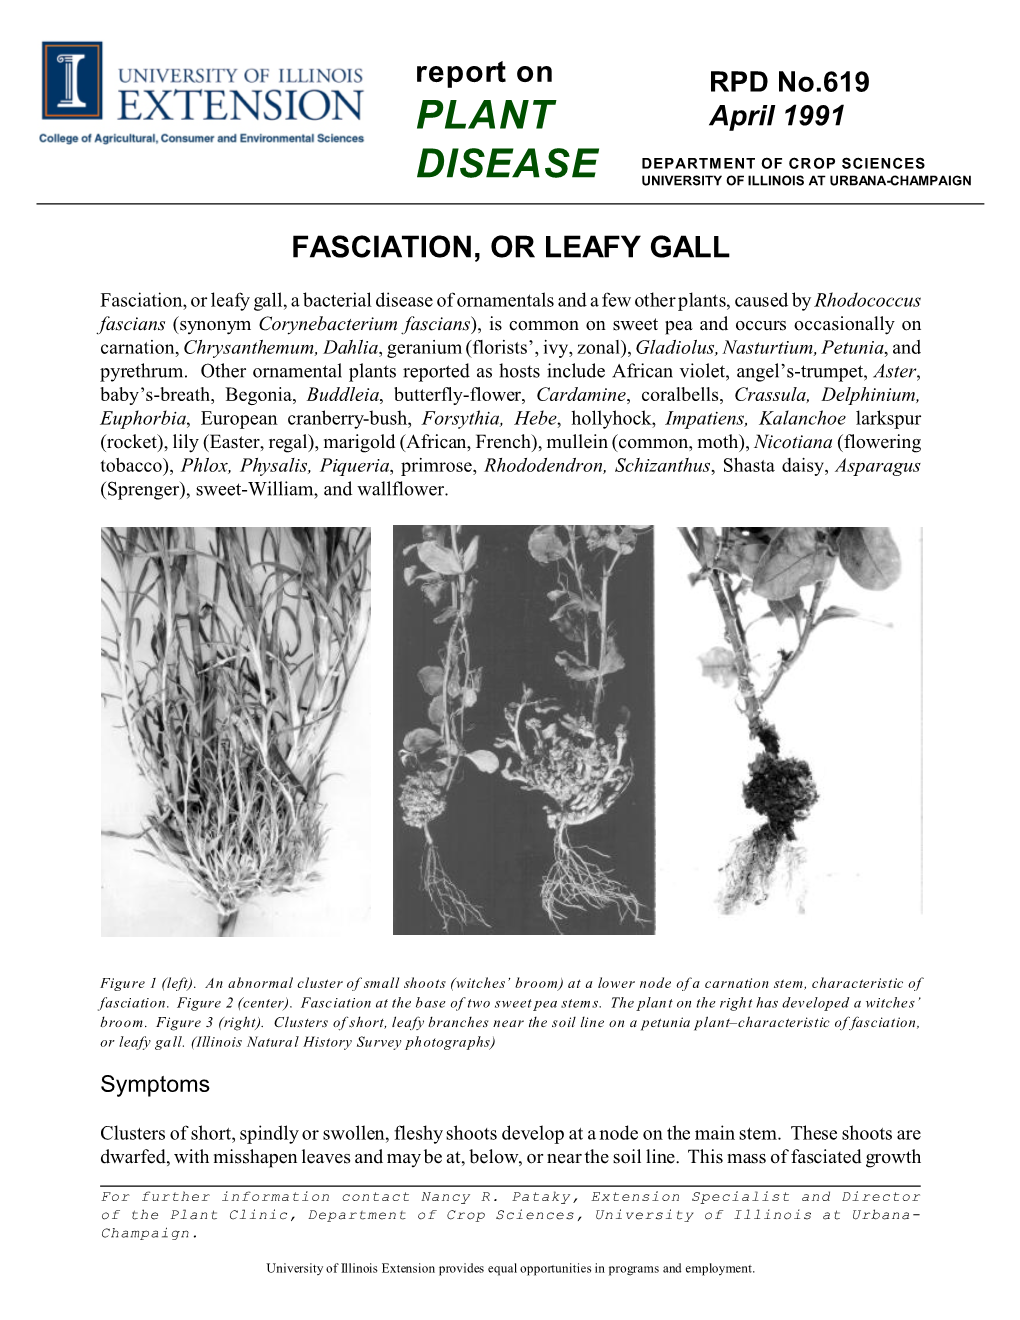 Fasciation, Or Leafy Gall